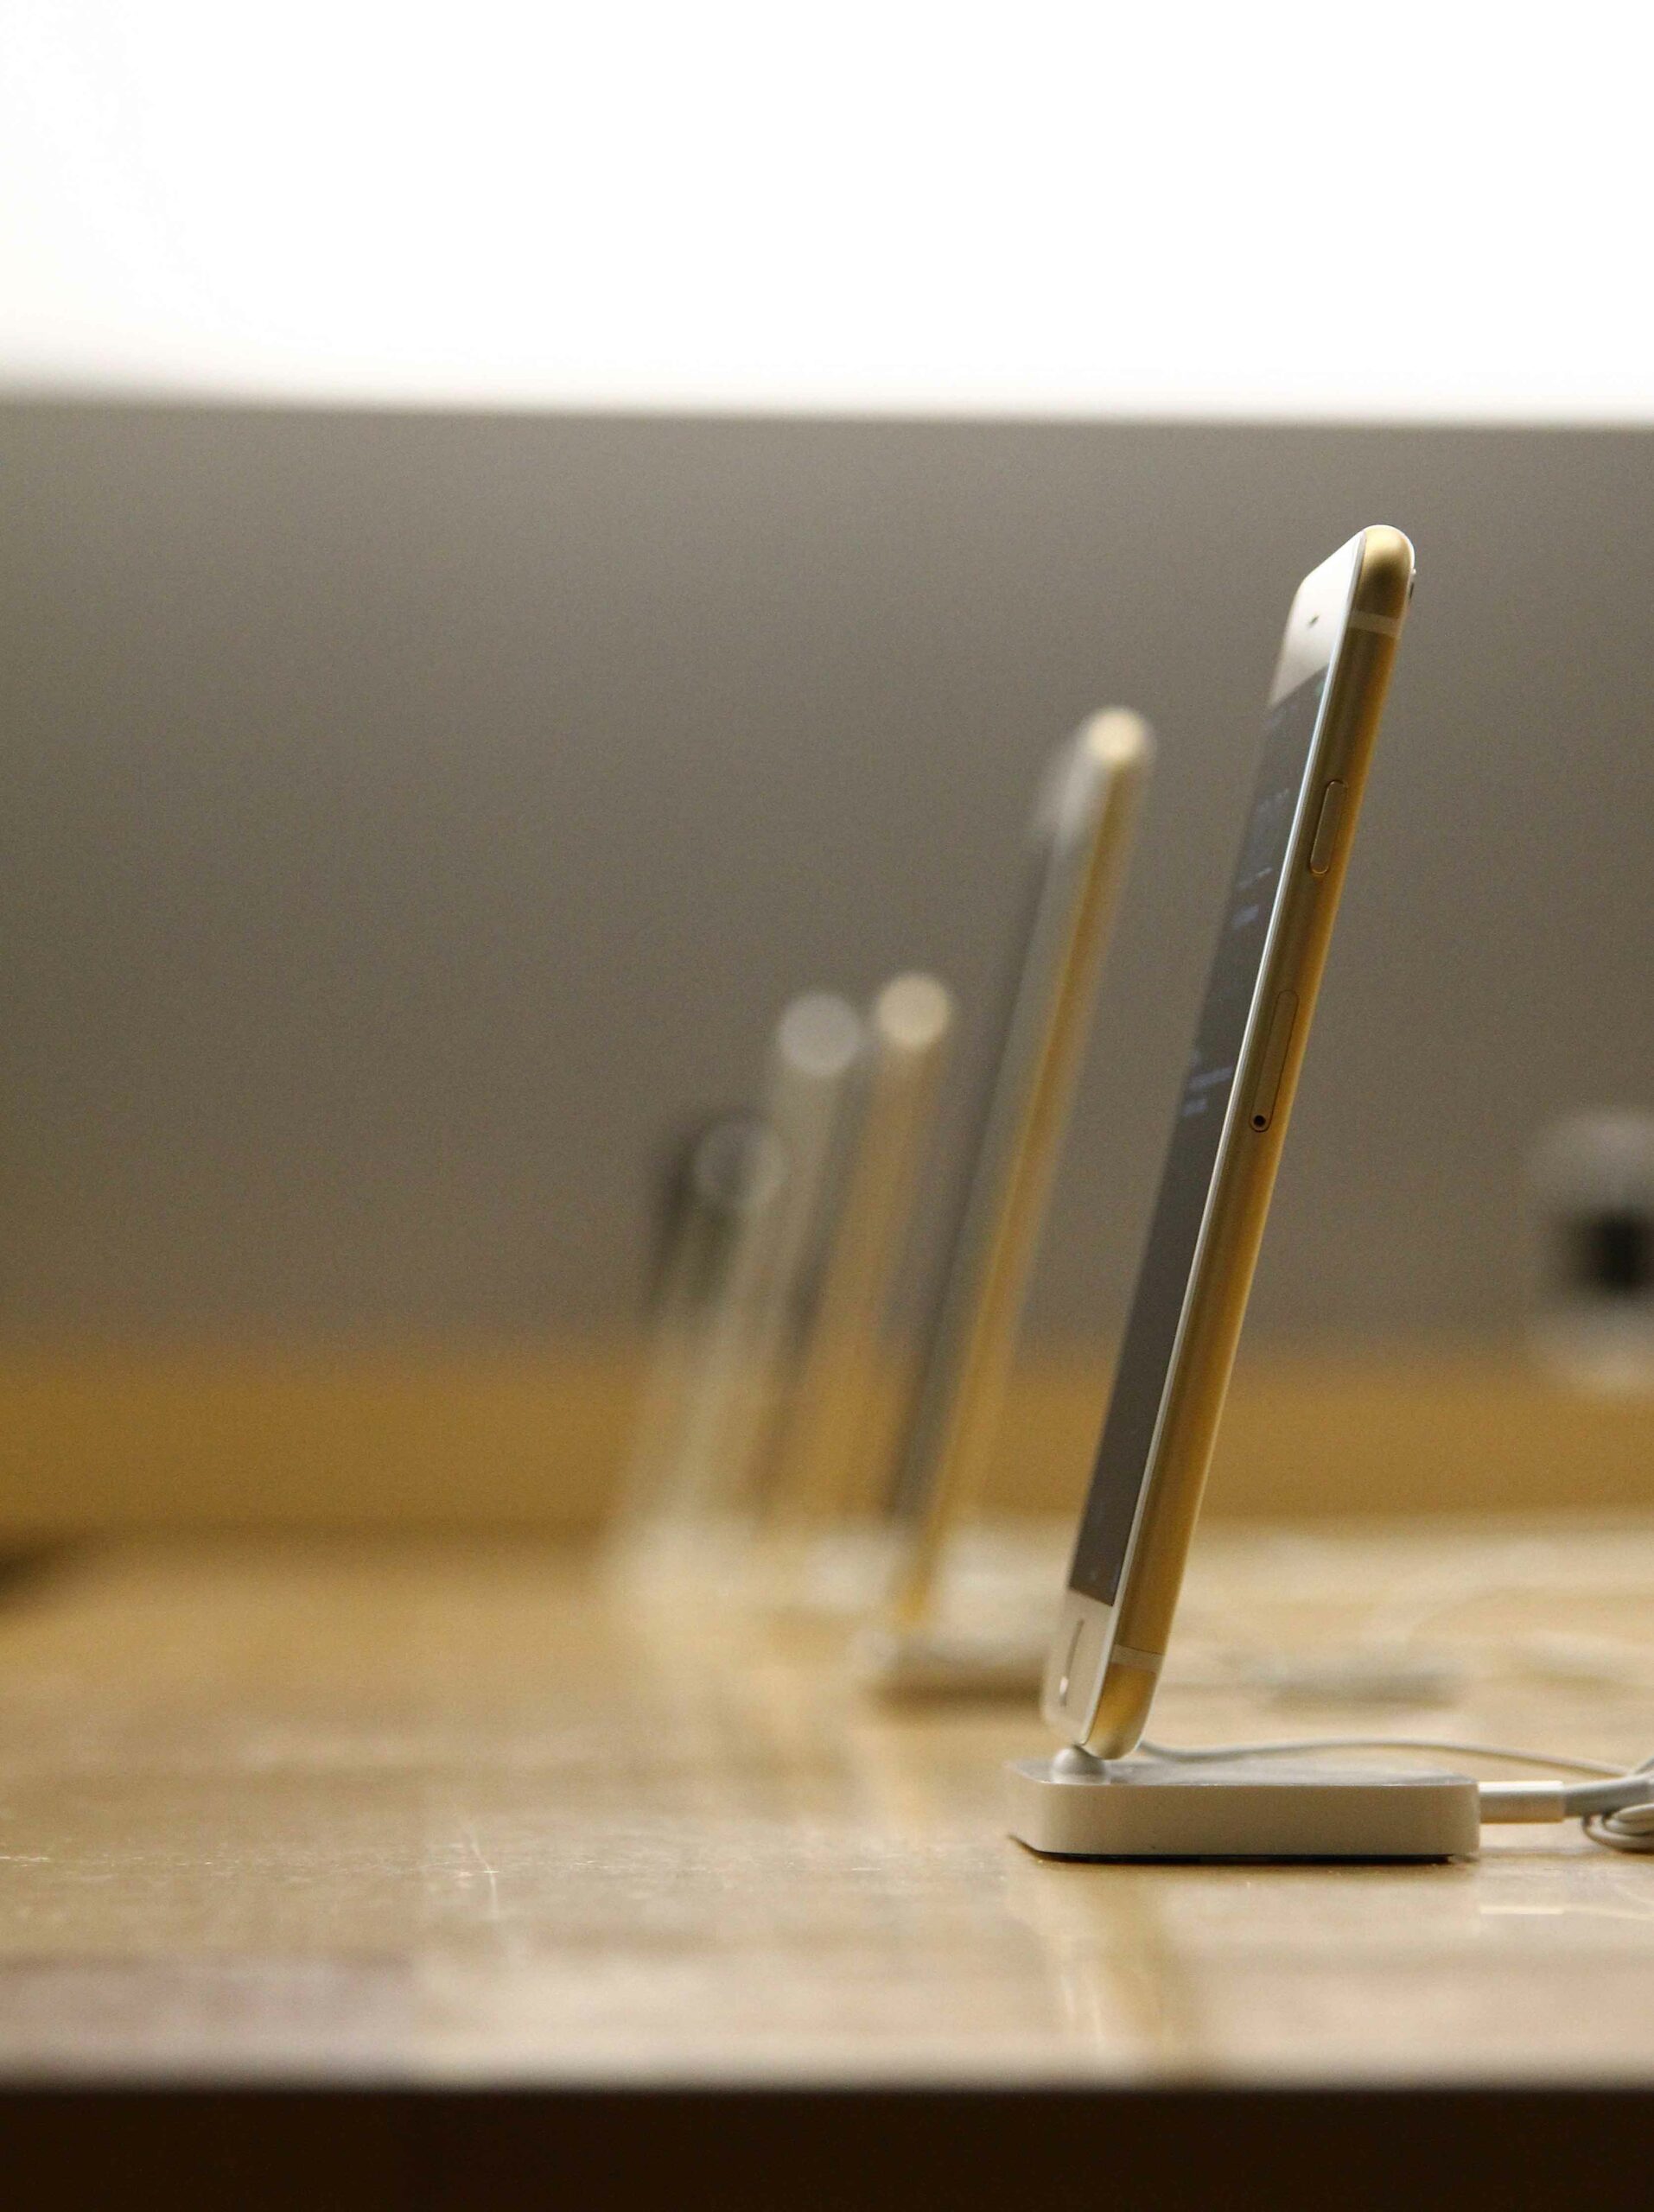 Mobiliario con Iphones para una tienda Apple